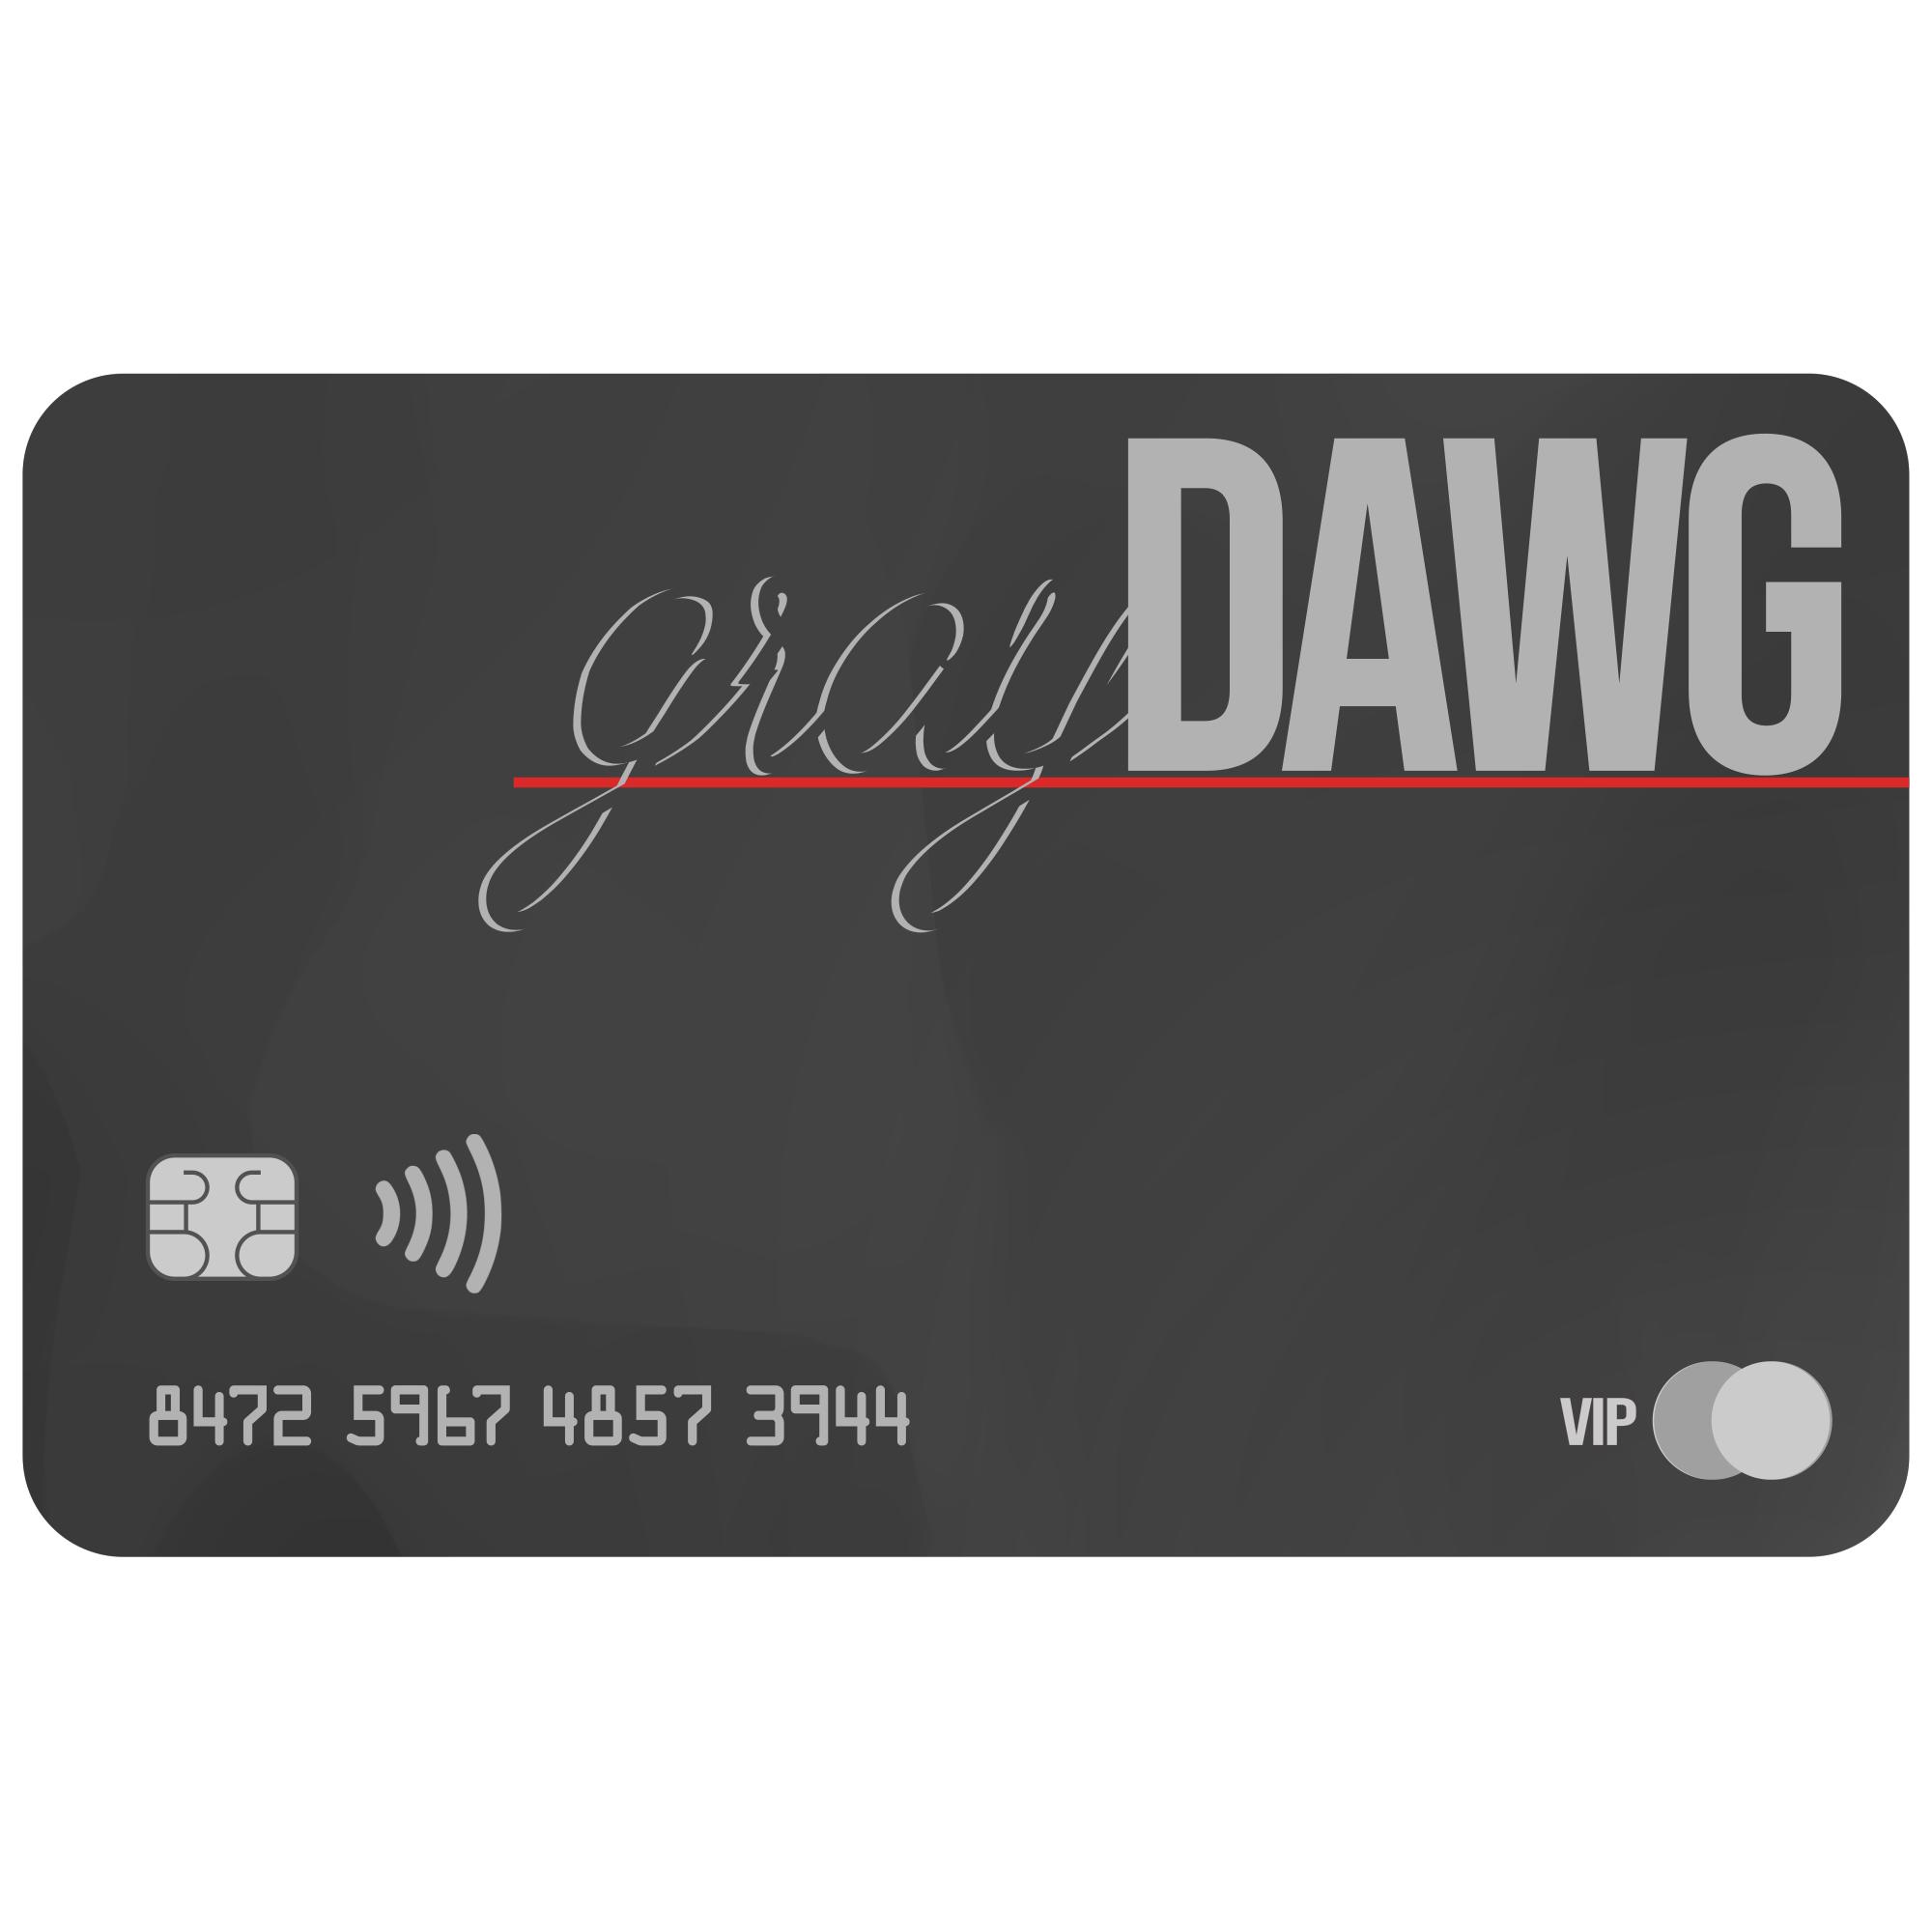 grayDAWG CashCard 2